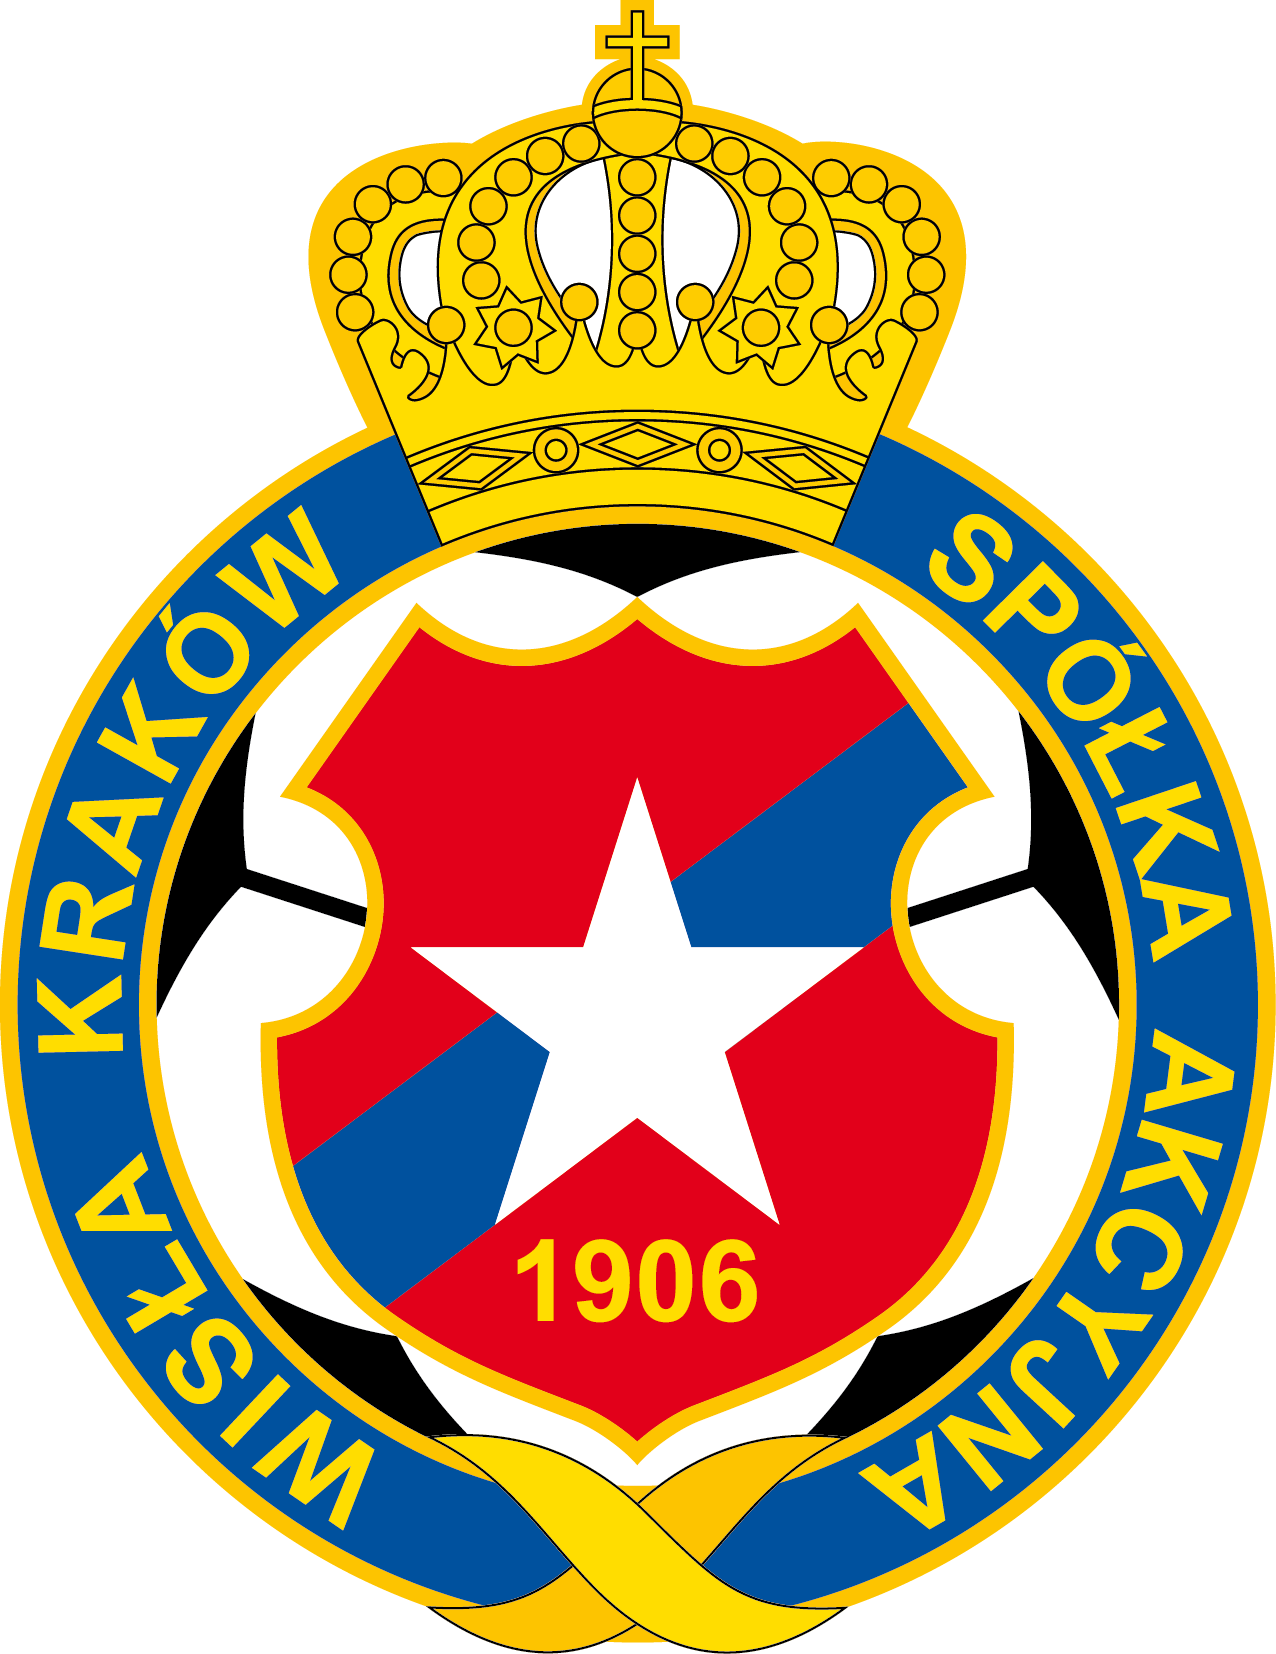 Wisla Krakow logo